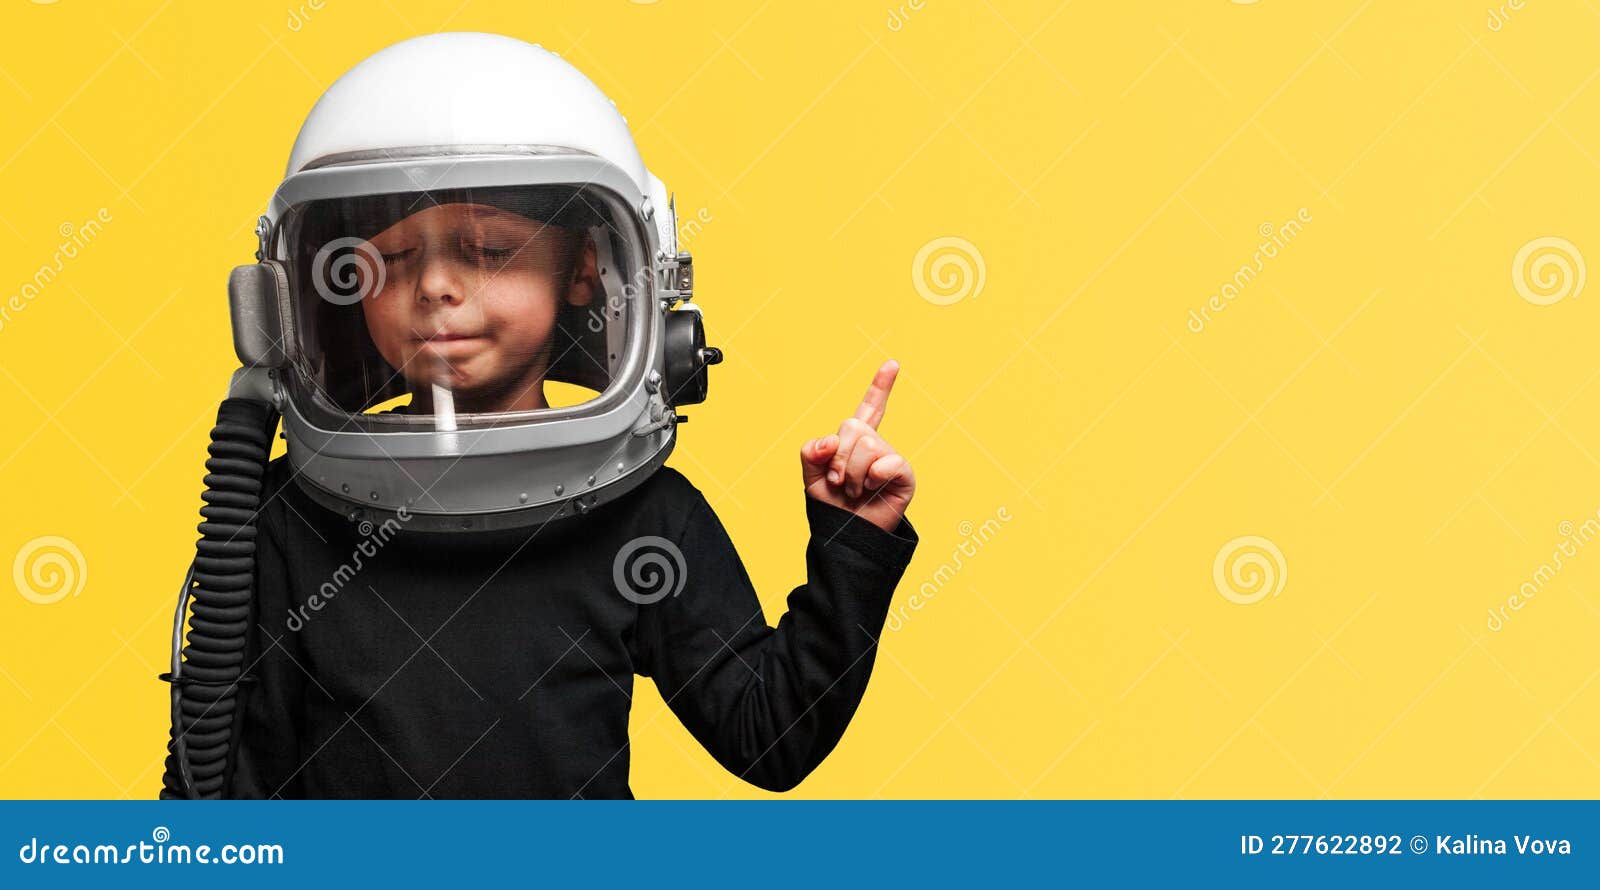 https://thumbs.dreamstime.com/z/un-ni%C3%B1o-peque%C3%B1o-quiere-volar-en-el-espacio-usando-casco-astronauta-lavabo-exuberante-277622892.jpg